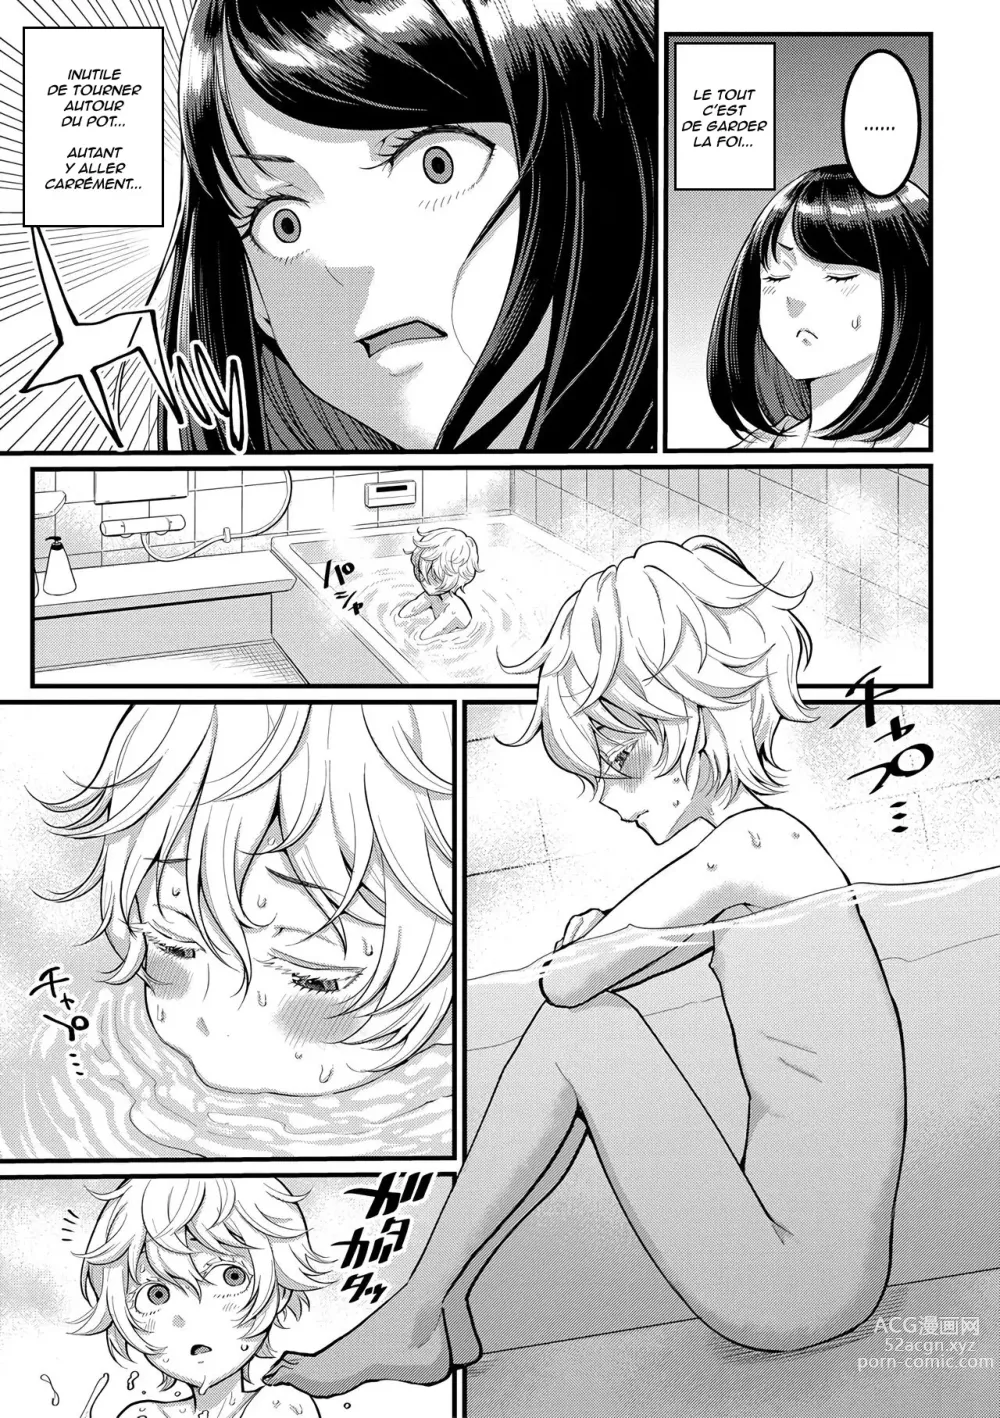 Page 8 of manga Anata no Mama ni Naritakute - I want to be your real mom.